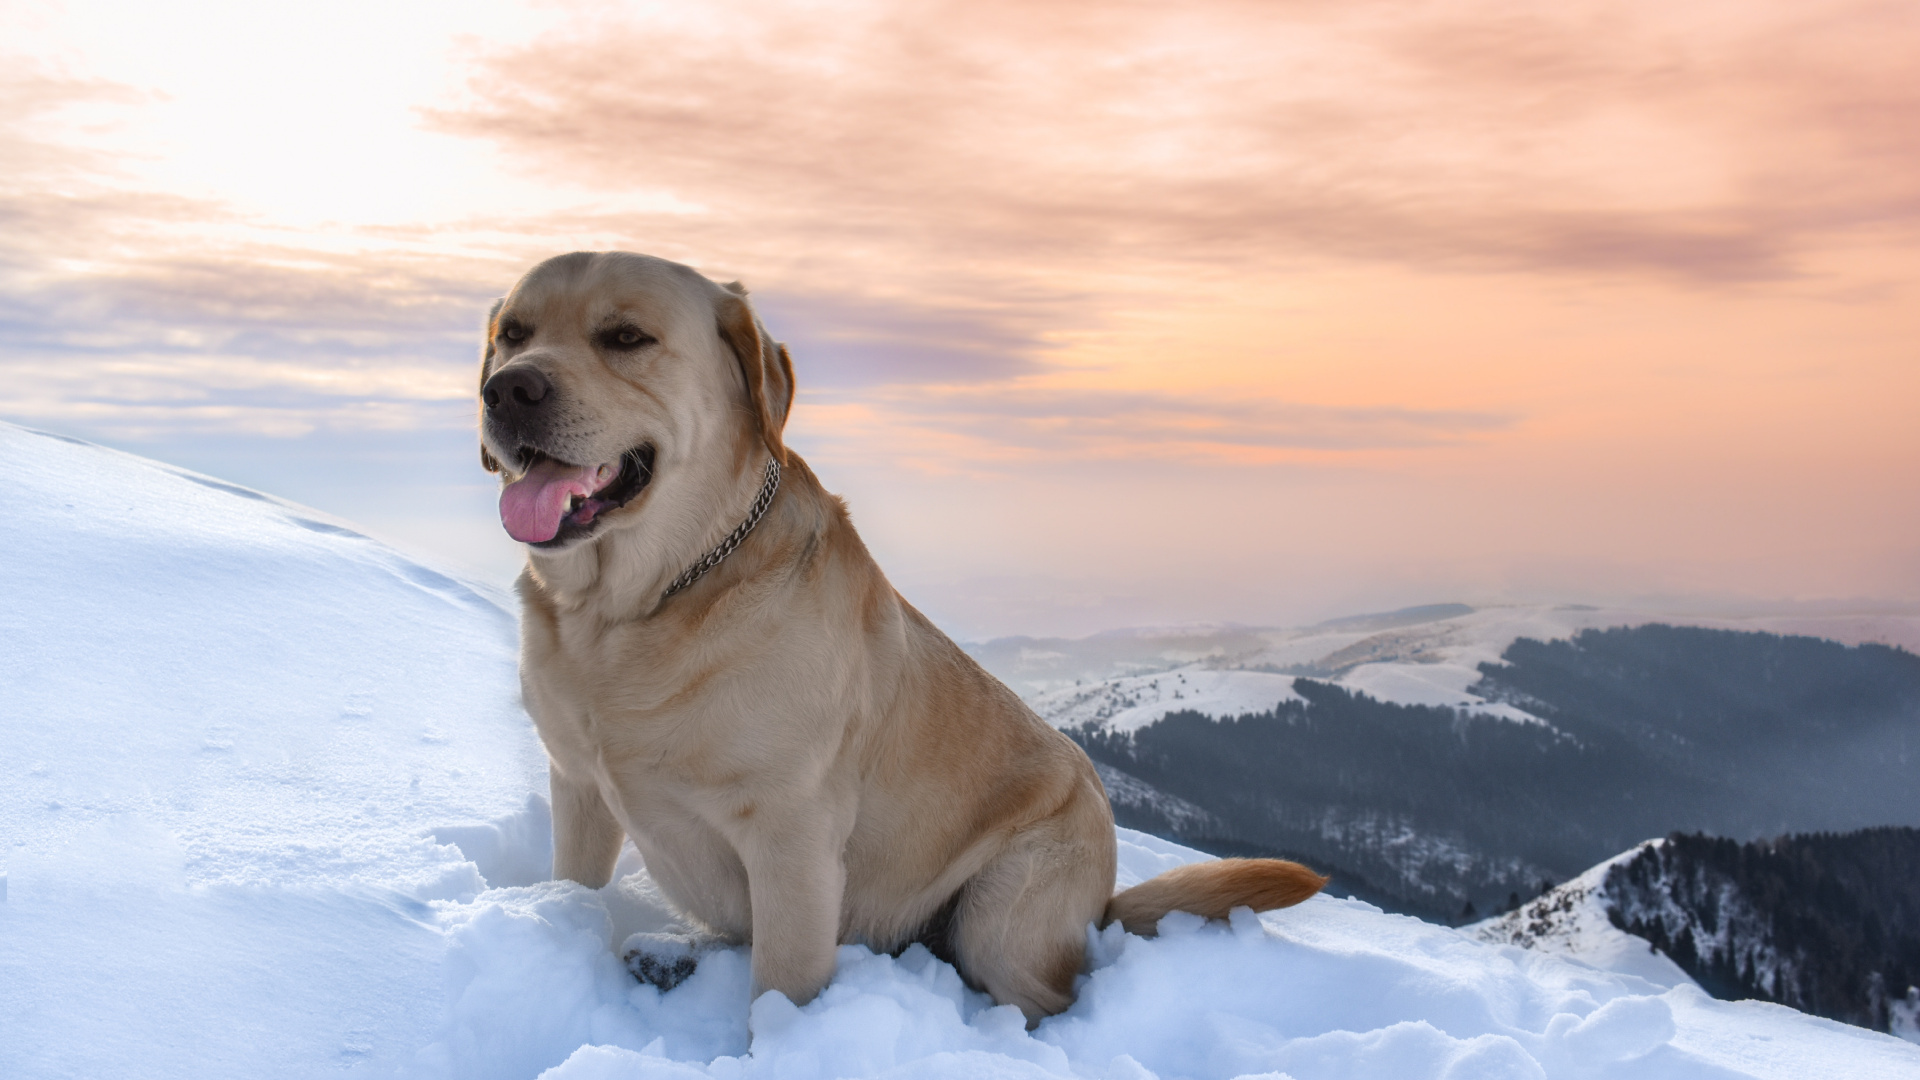 Brauner, Kurzhaariger Hund Auf Schneebedecktem Boden Tagsüber. Wallpaper in 1920x1080 Resolution